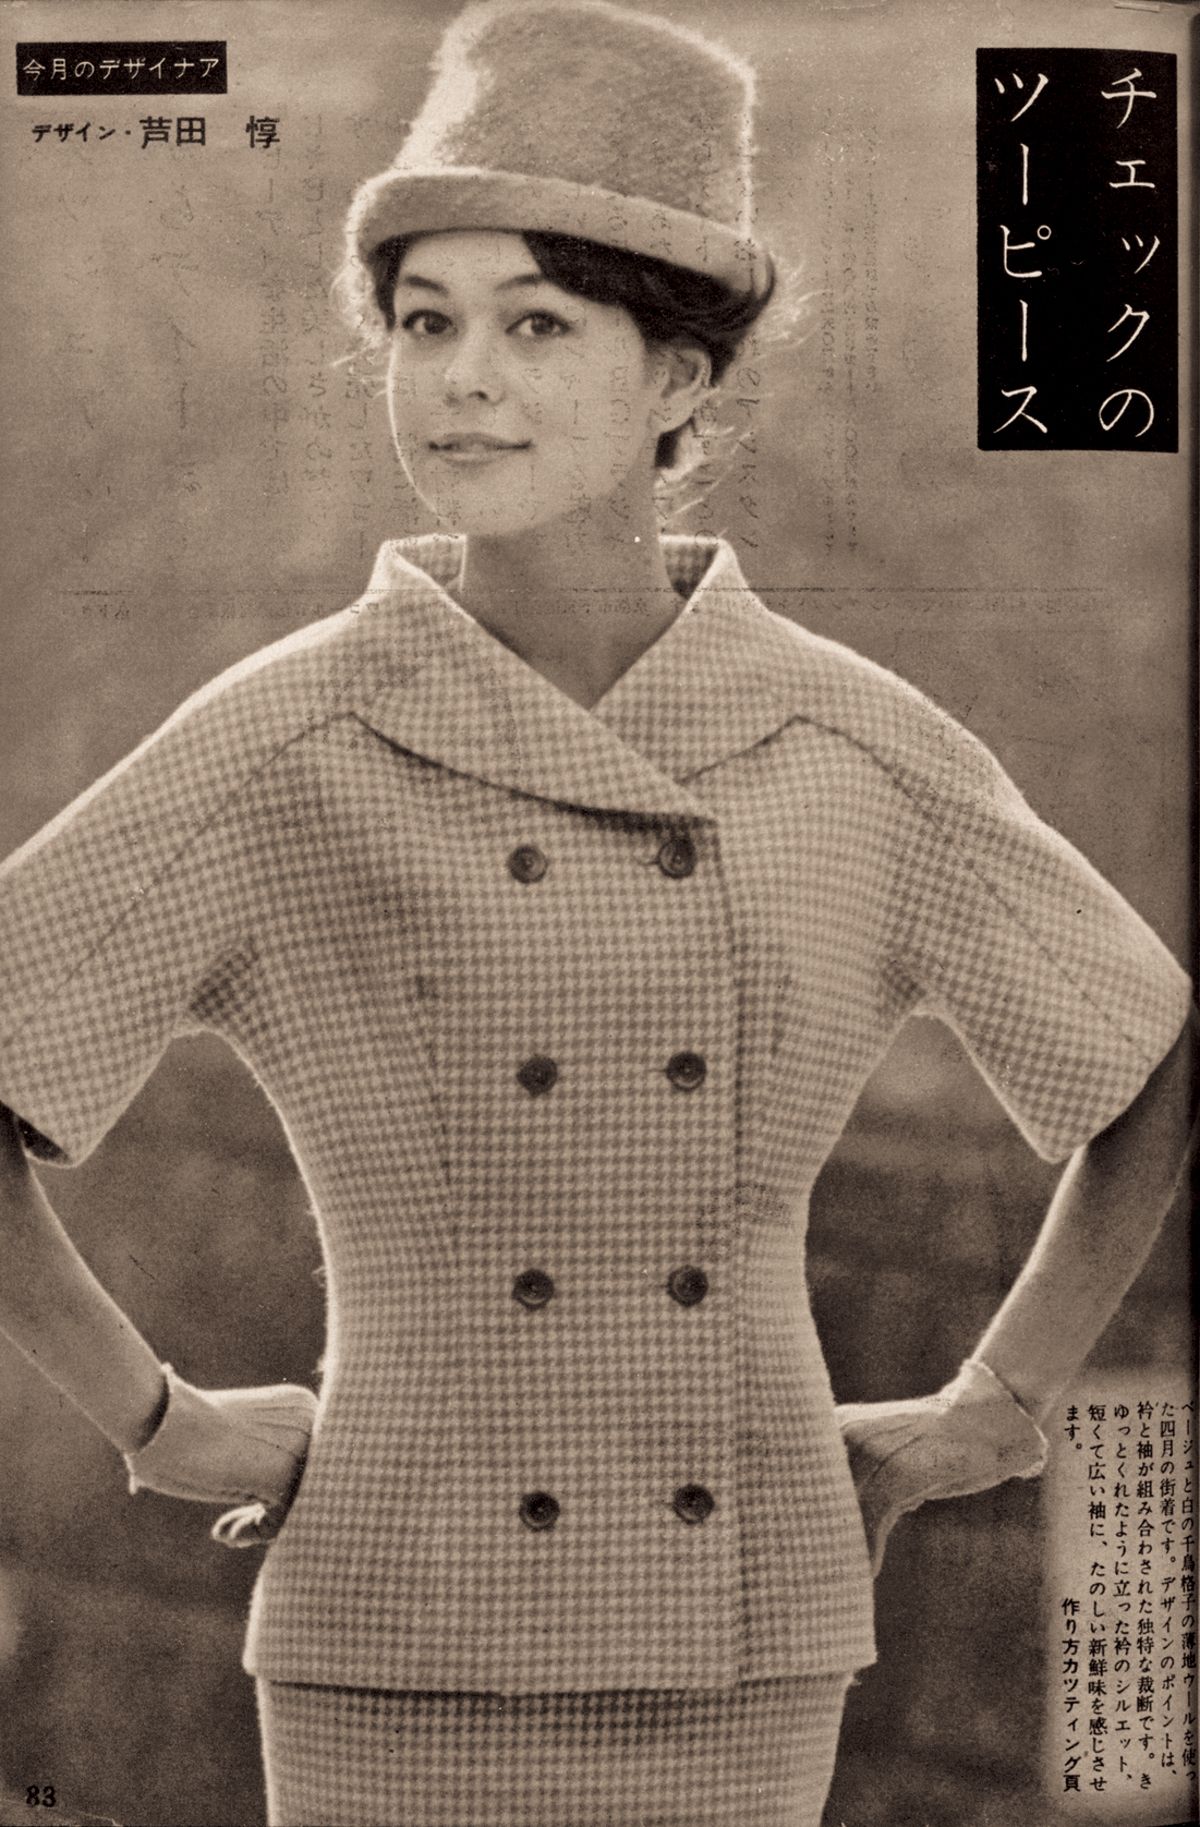 115年を振り返り。『婦人画報』が伝えてきた女性とファッションー「日本育ち」のエレガンス